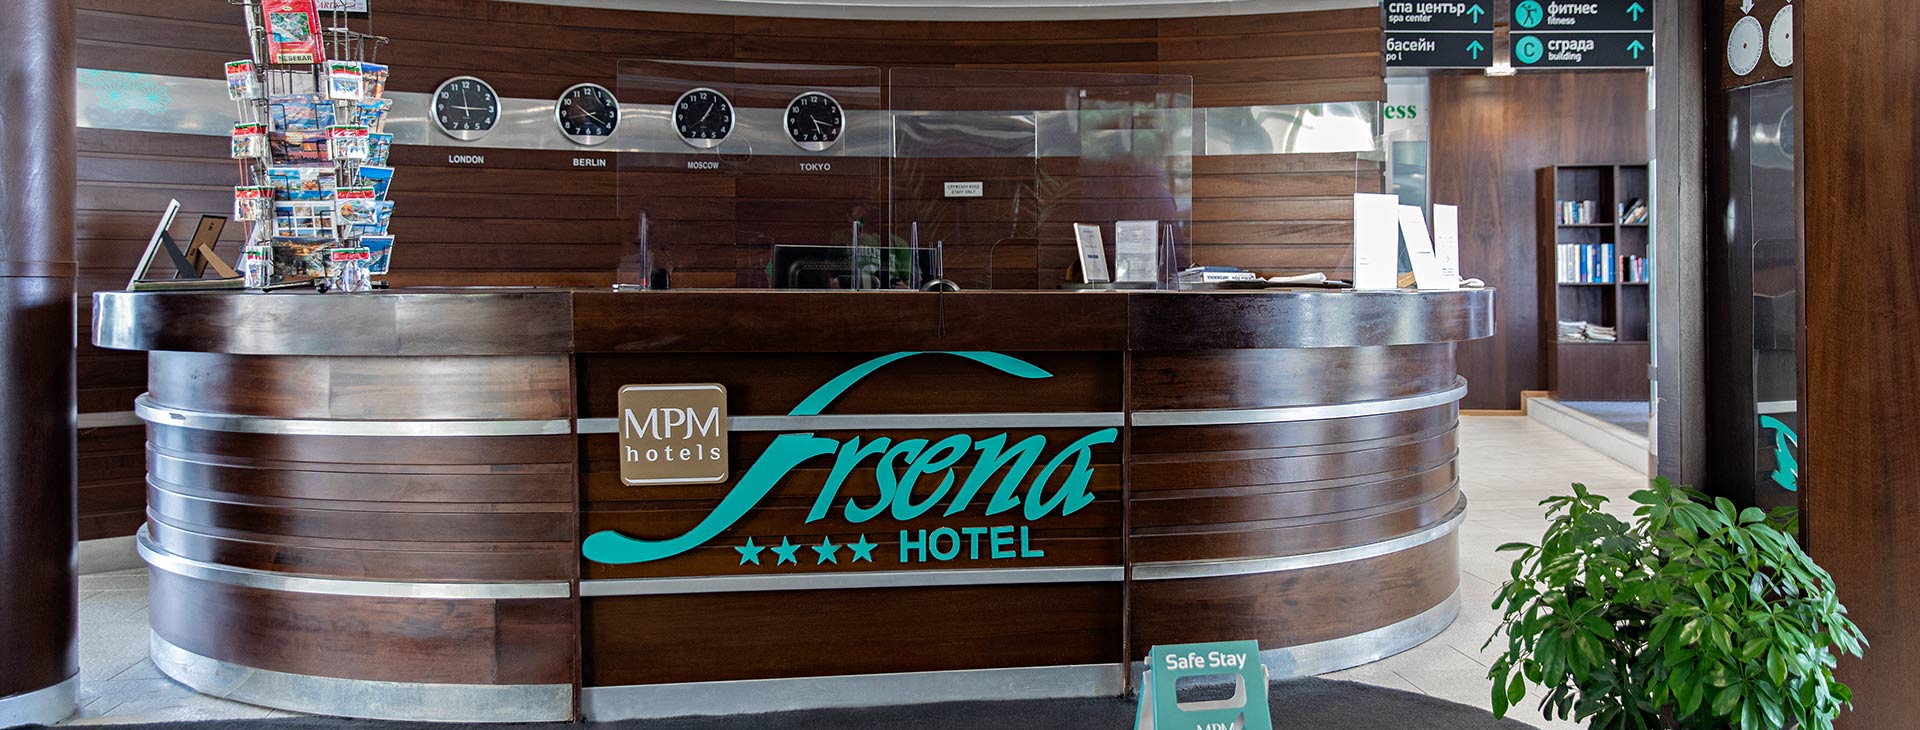 Hotel MPM Arsena Obrázek16